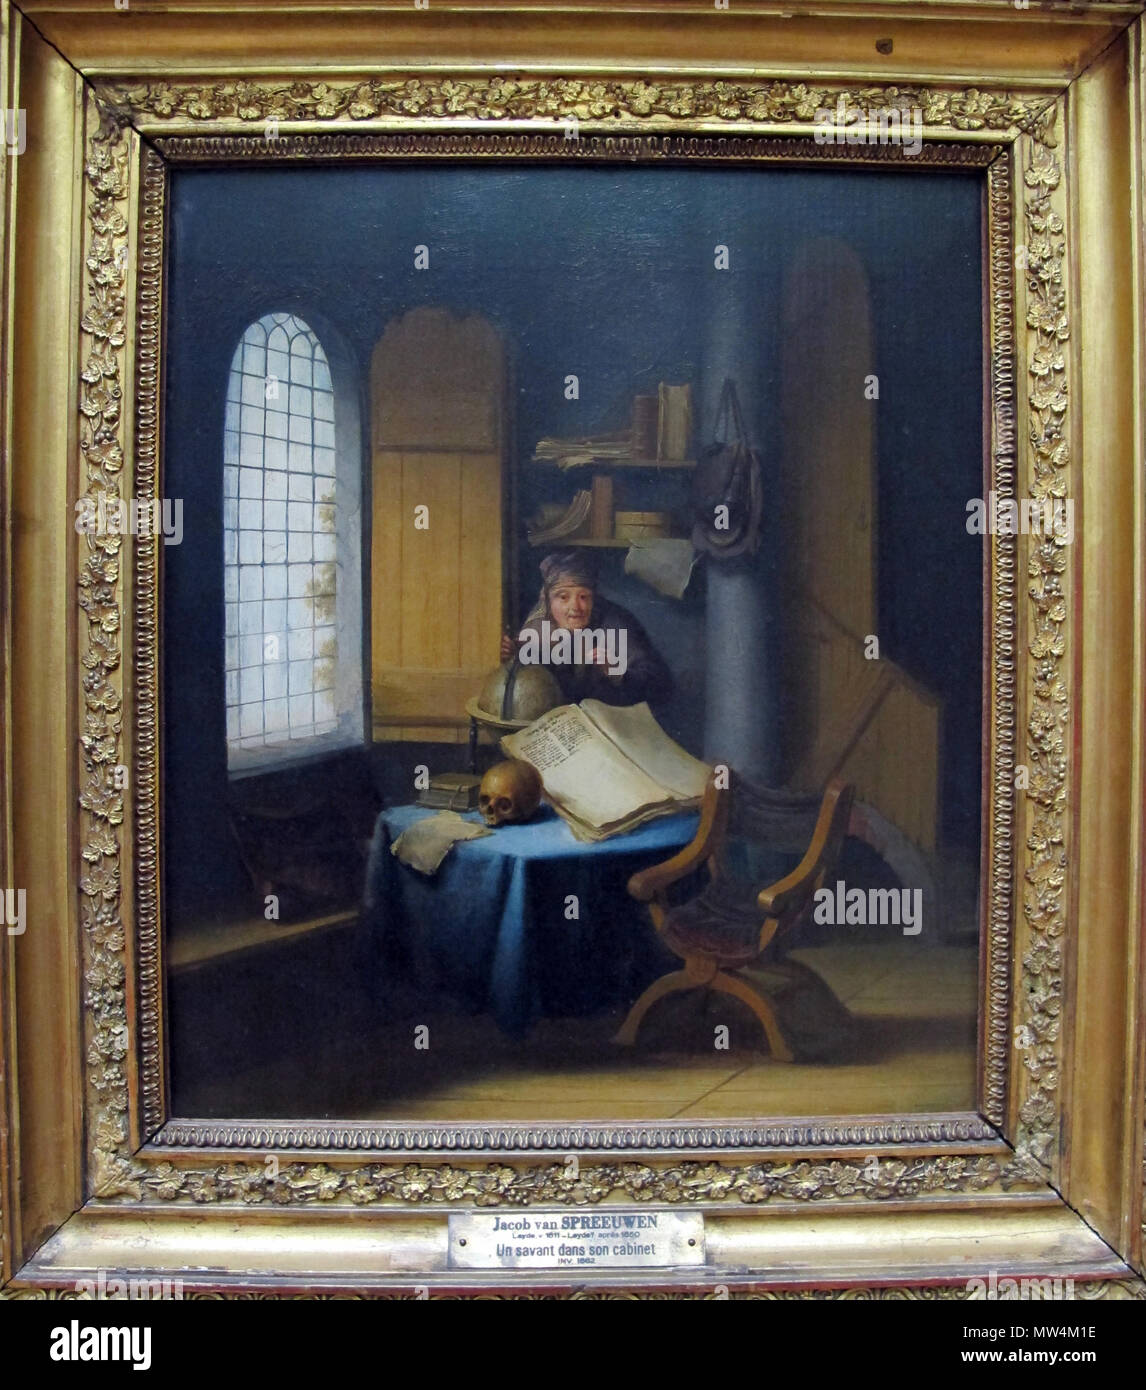 304 Jacob van spreeuwen, uno scienziato nel suo studio con lezione di vanità, 1630 ca. 01 Stock Photo